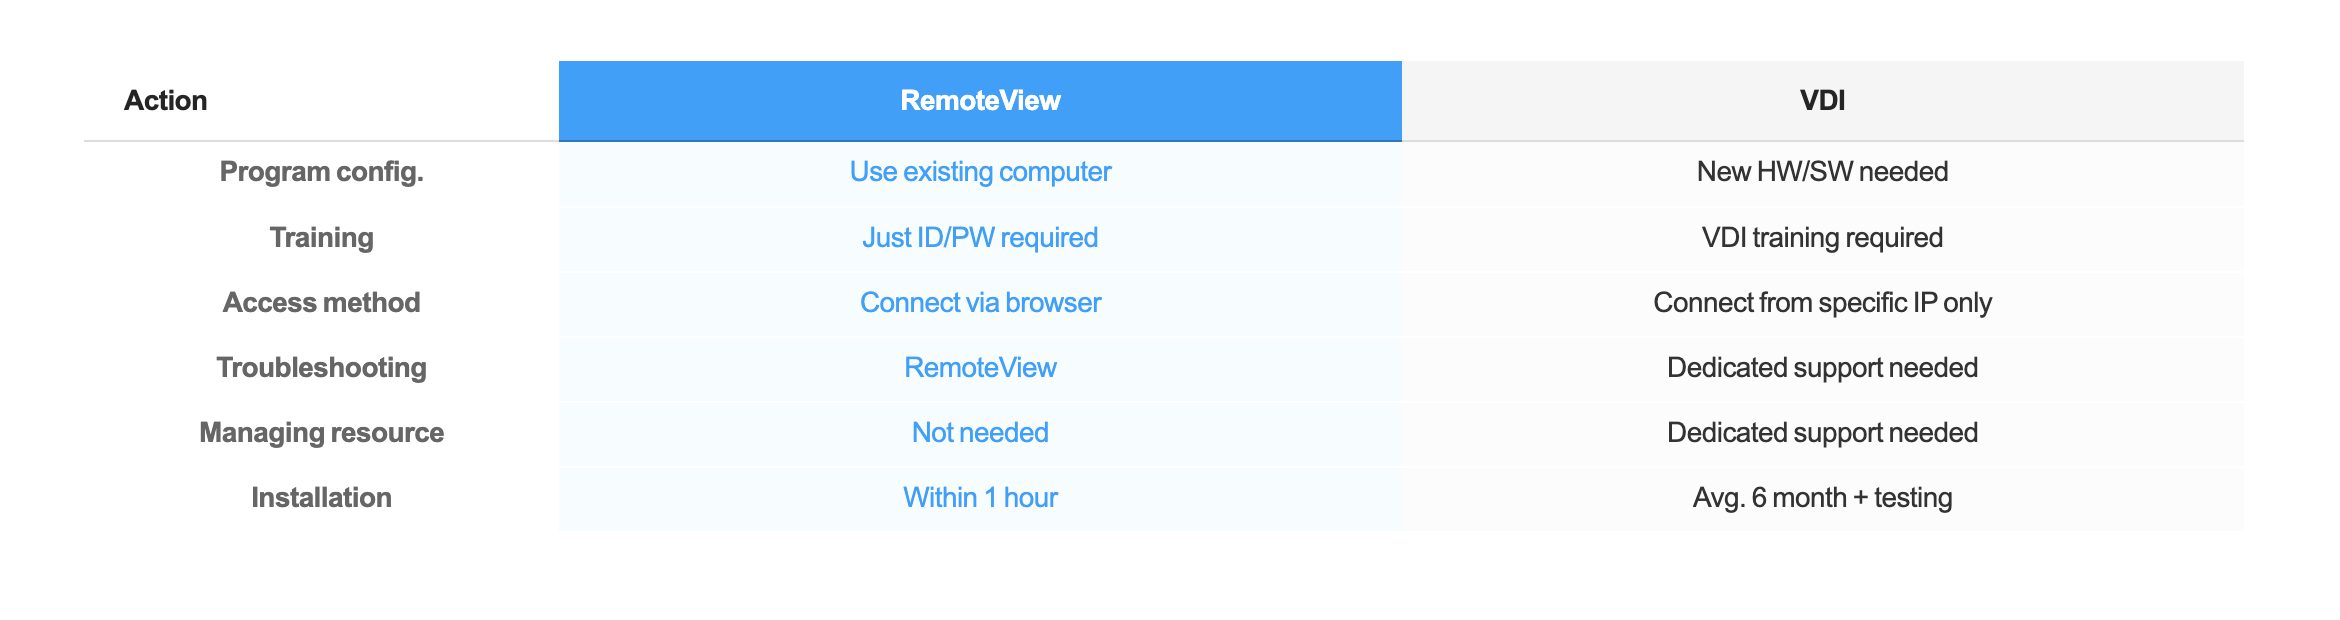 remote control - VDI vs Remoteview